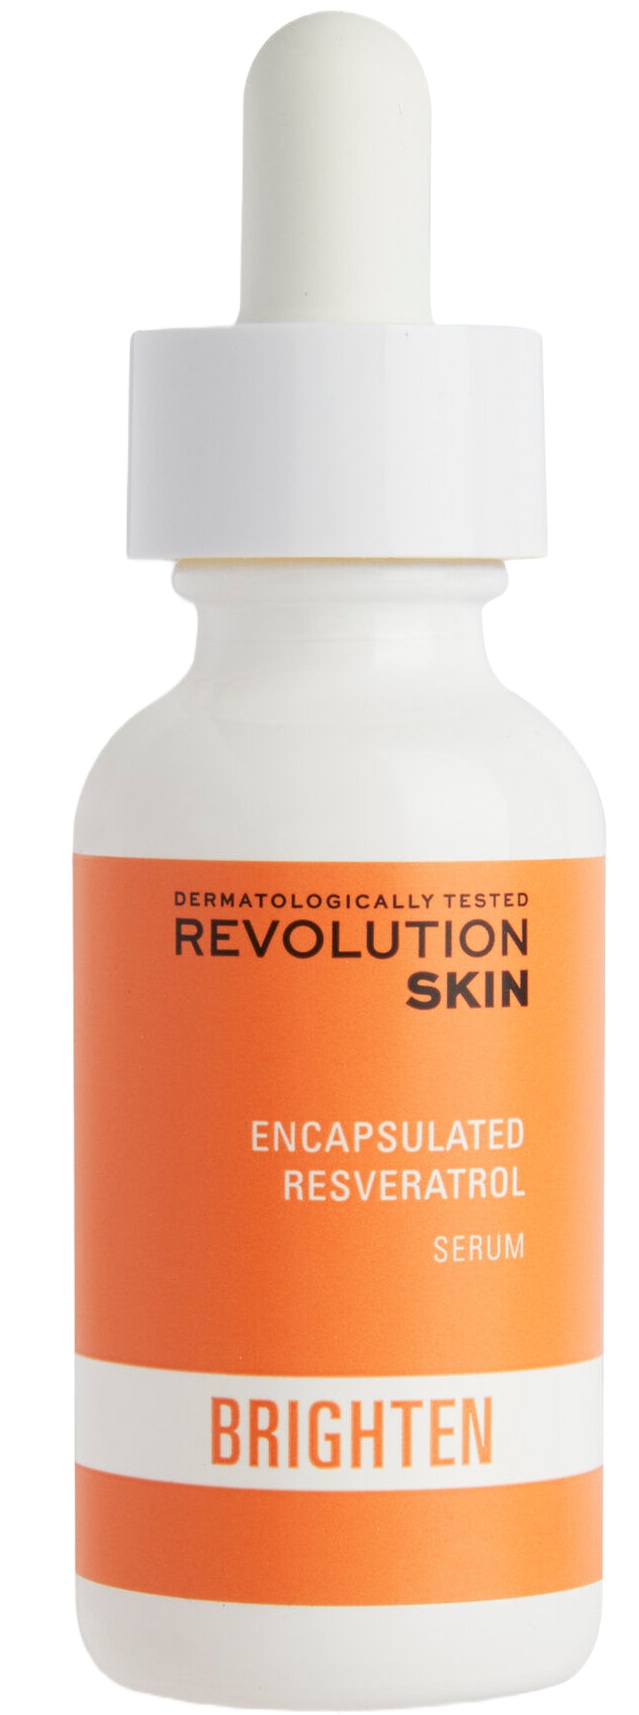 Revolution Skin Encapsulated Resveratrol Serum